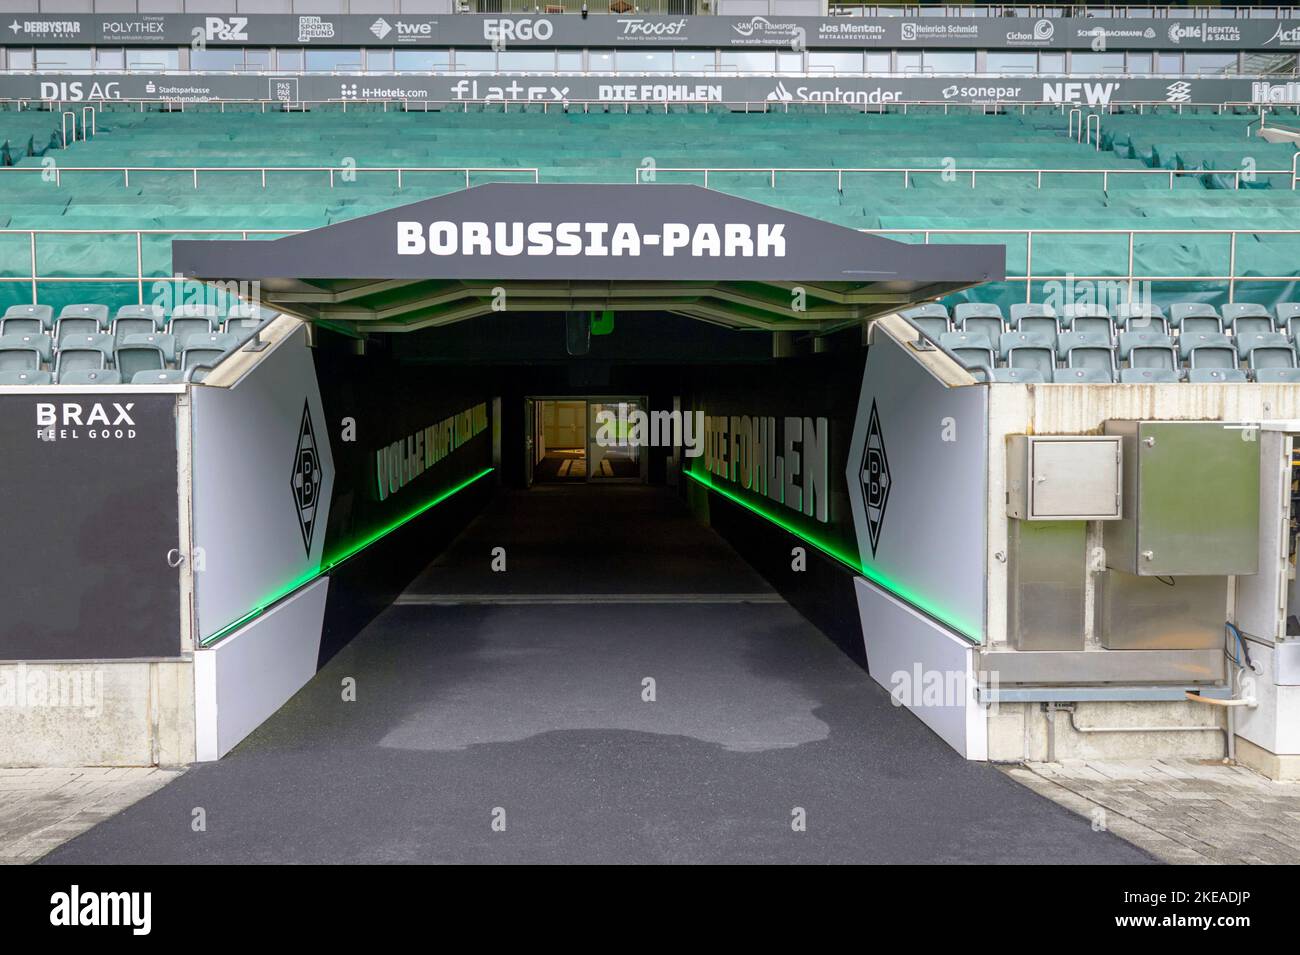 Visitare l'arena Borussia Park - il parco giochi ufficiale del FC Borussia Monchengladbach Foto Stock